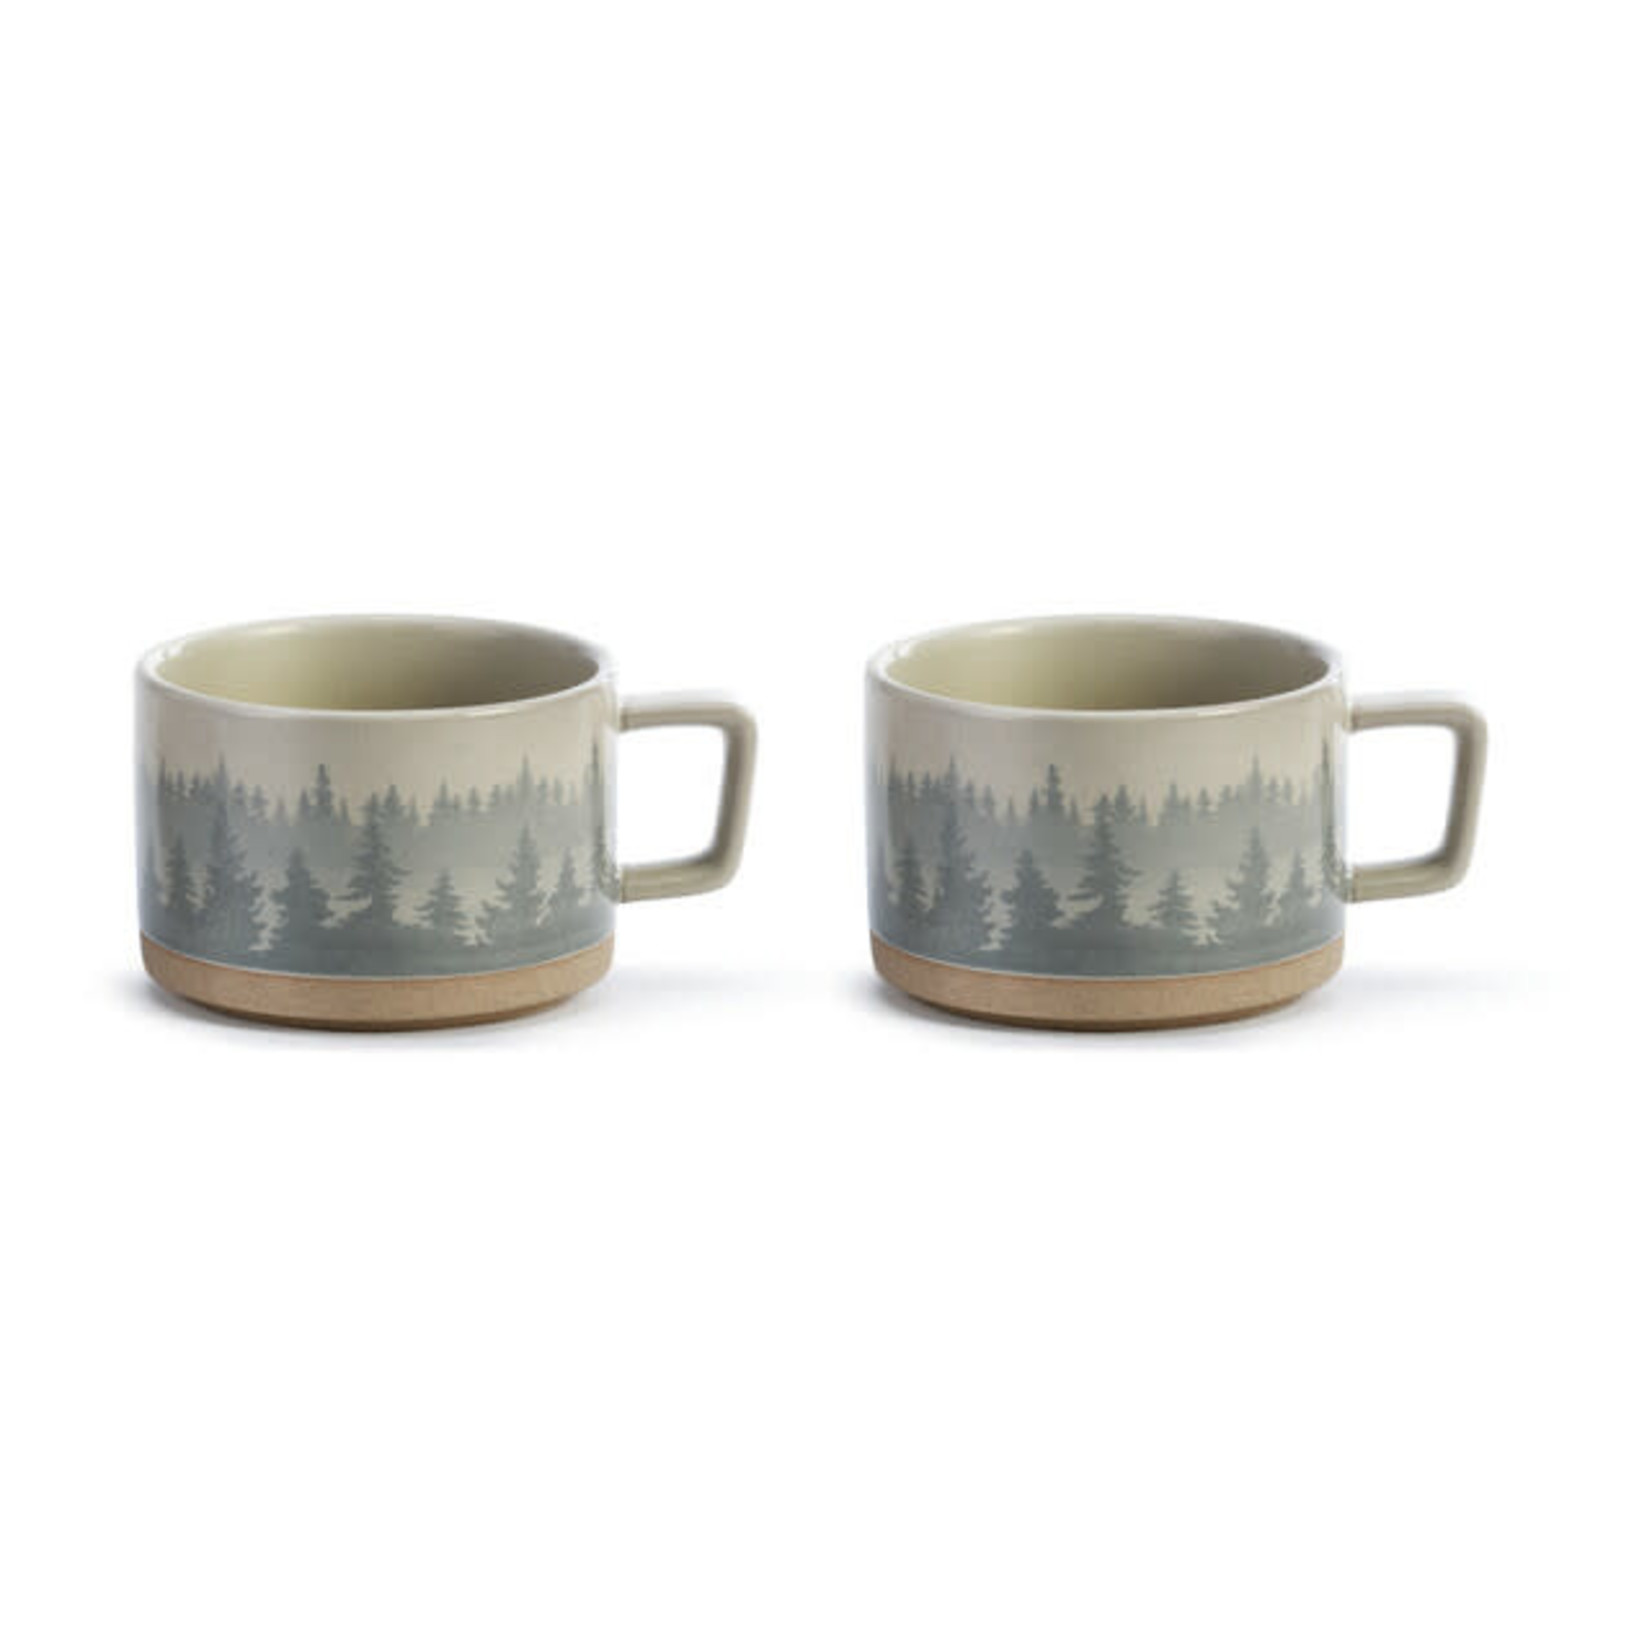 Forest Mist Soup mug set of 2